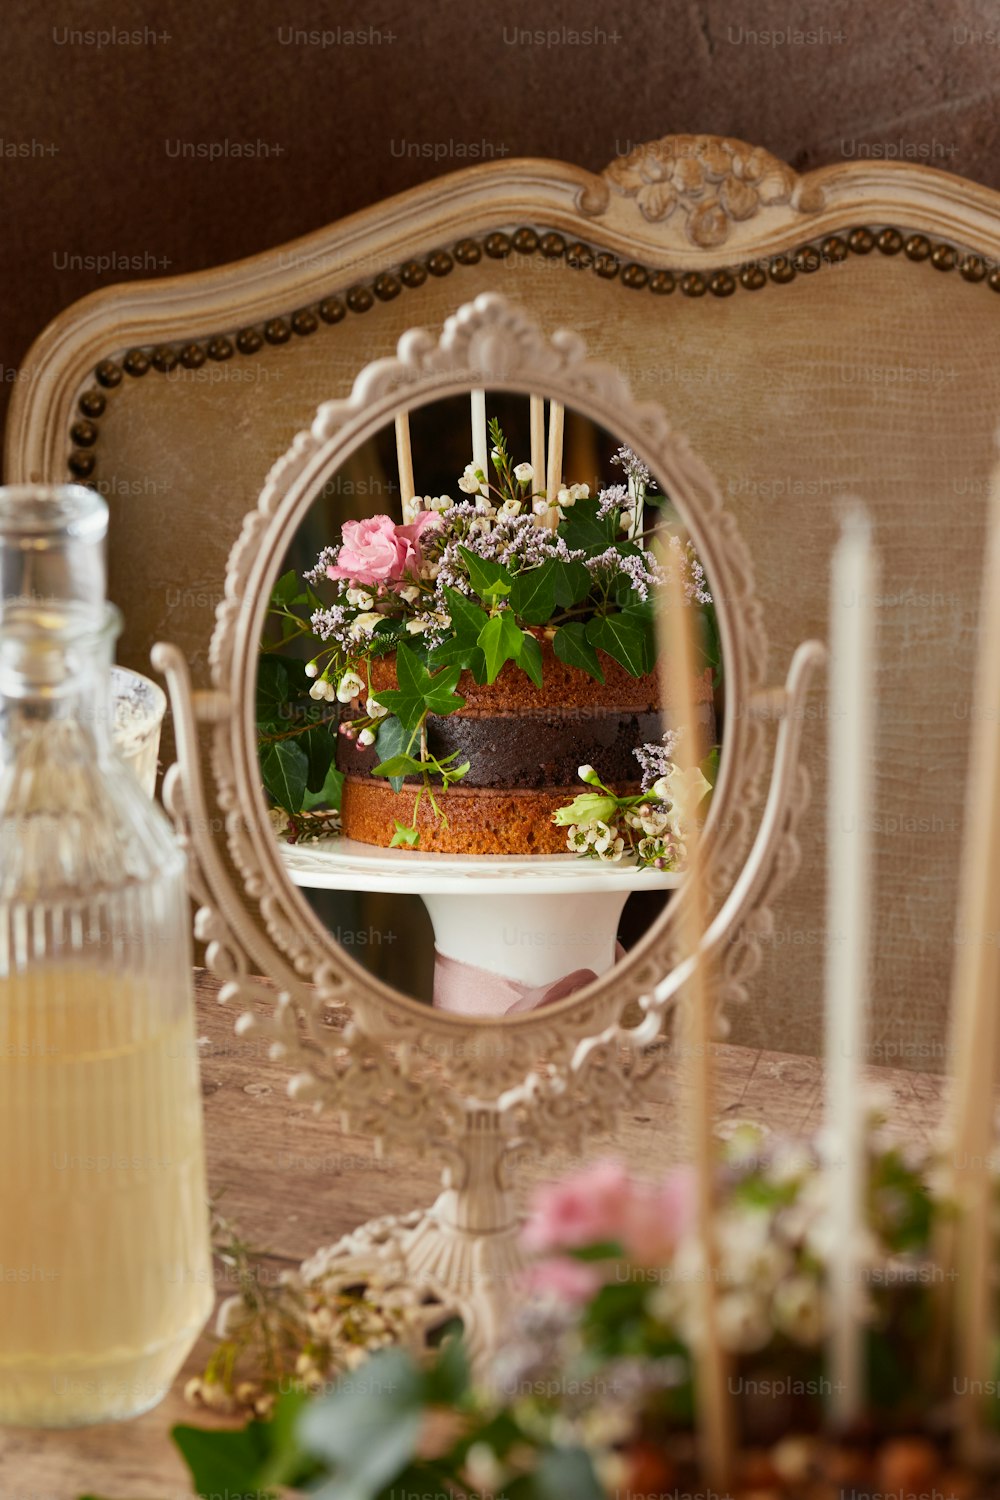 Un pastel está sentado en una mesa con un espejo